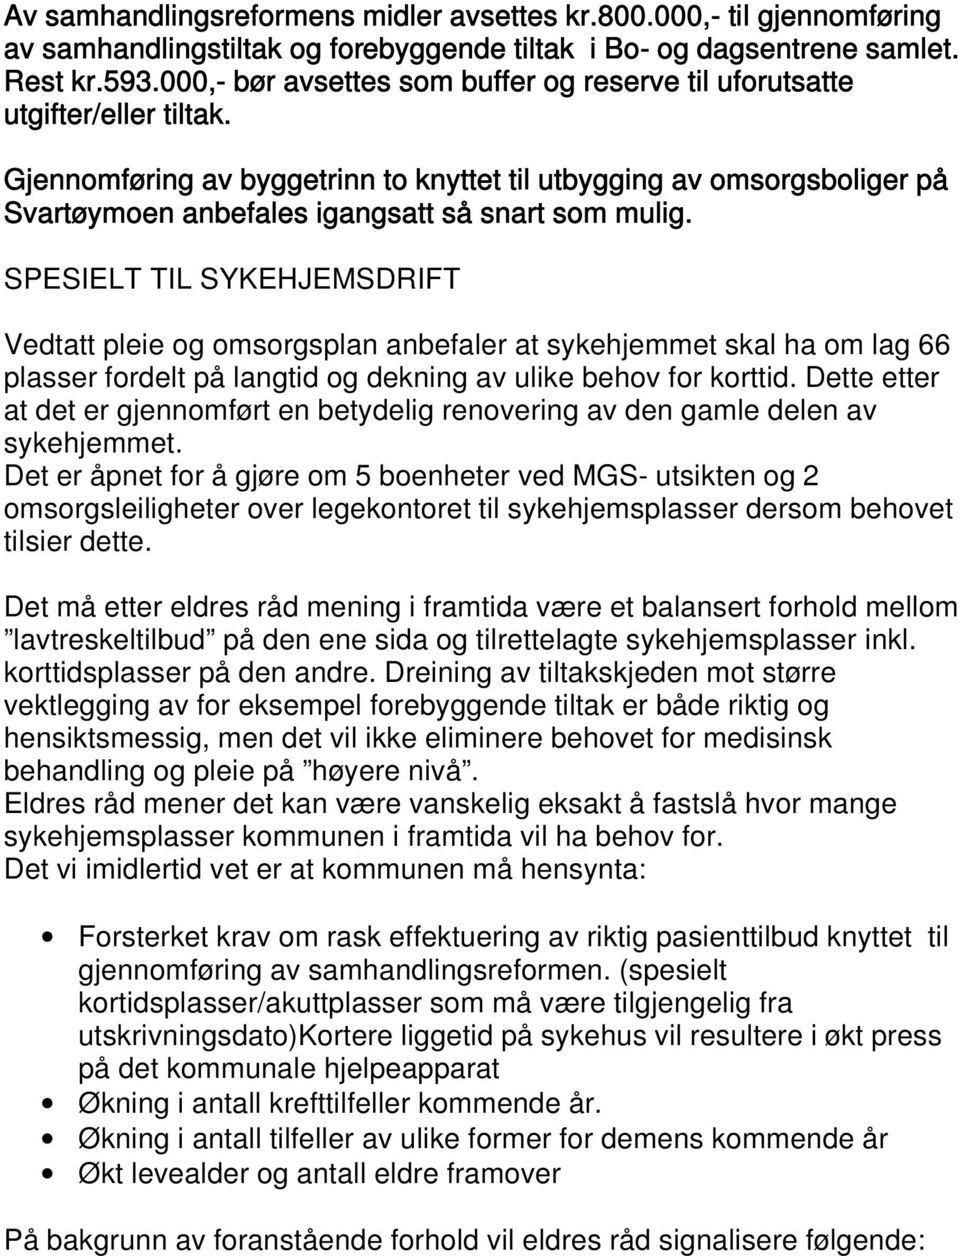 Gjennomføring av byggetrinn to knyttet til utbygging av omsorgsboliger på Svartøymoen anbefales igangsatt så snart som mulig.